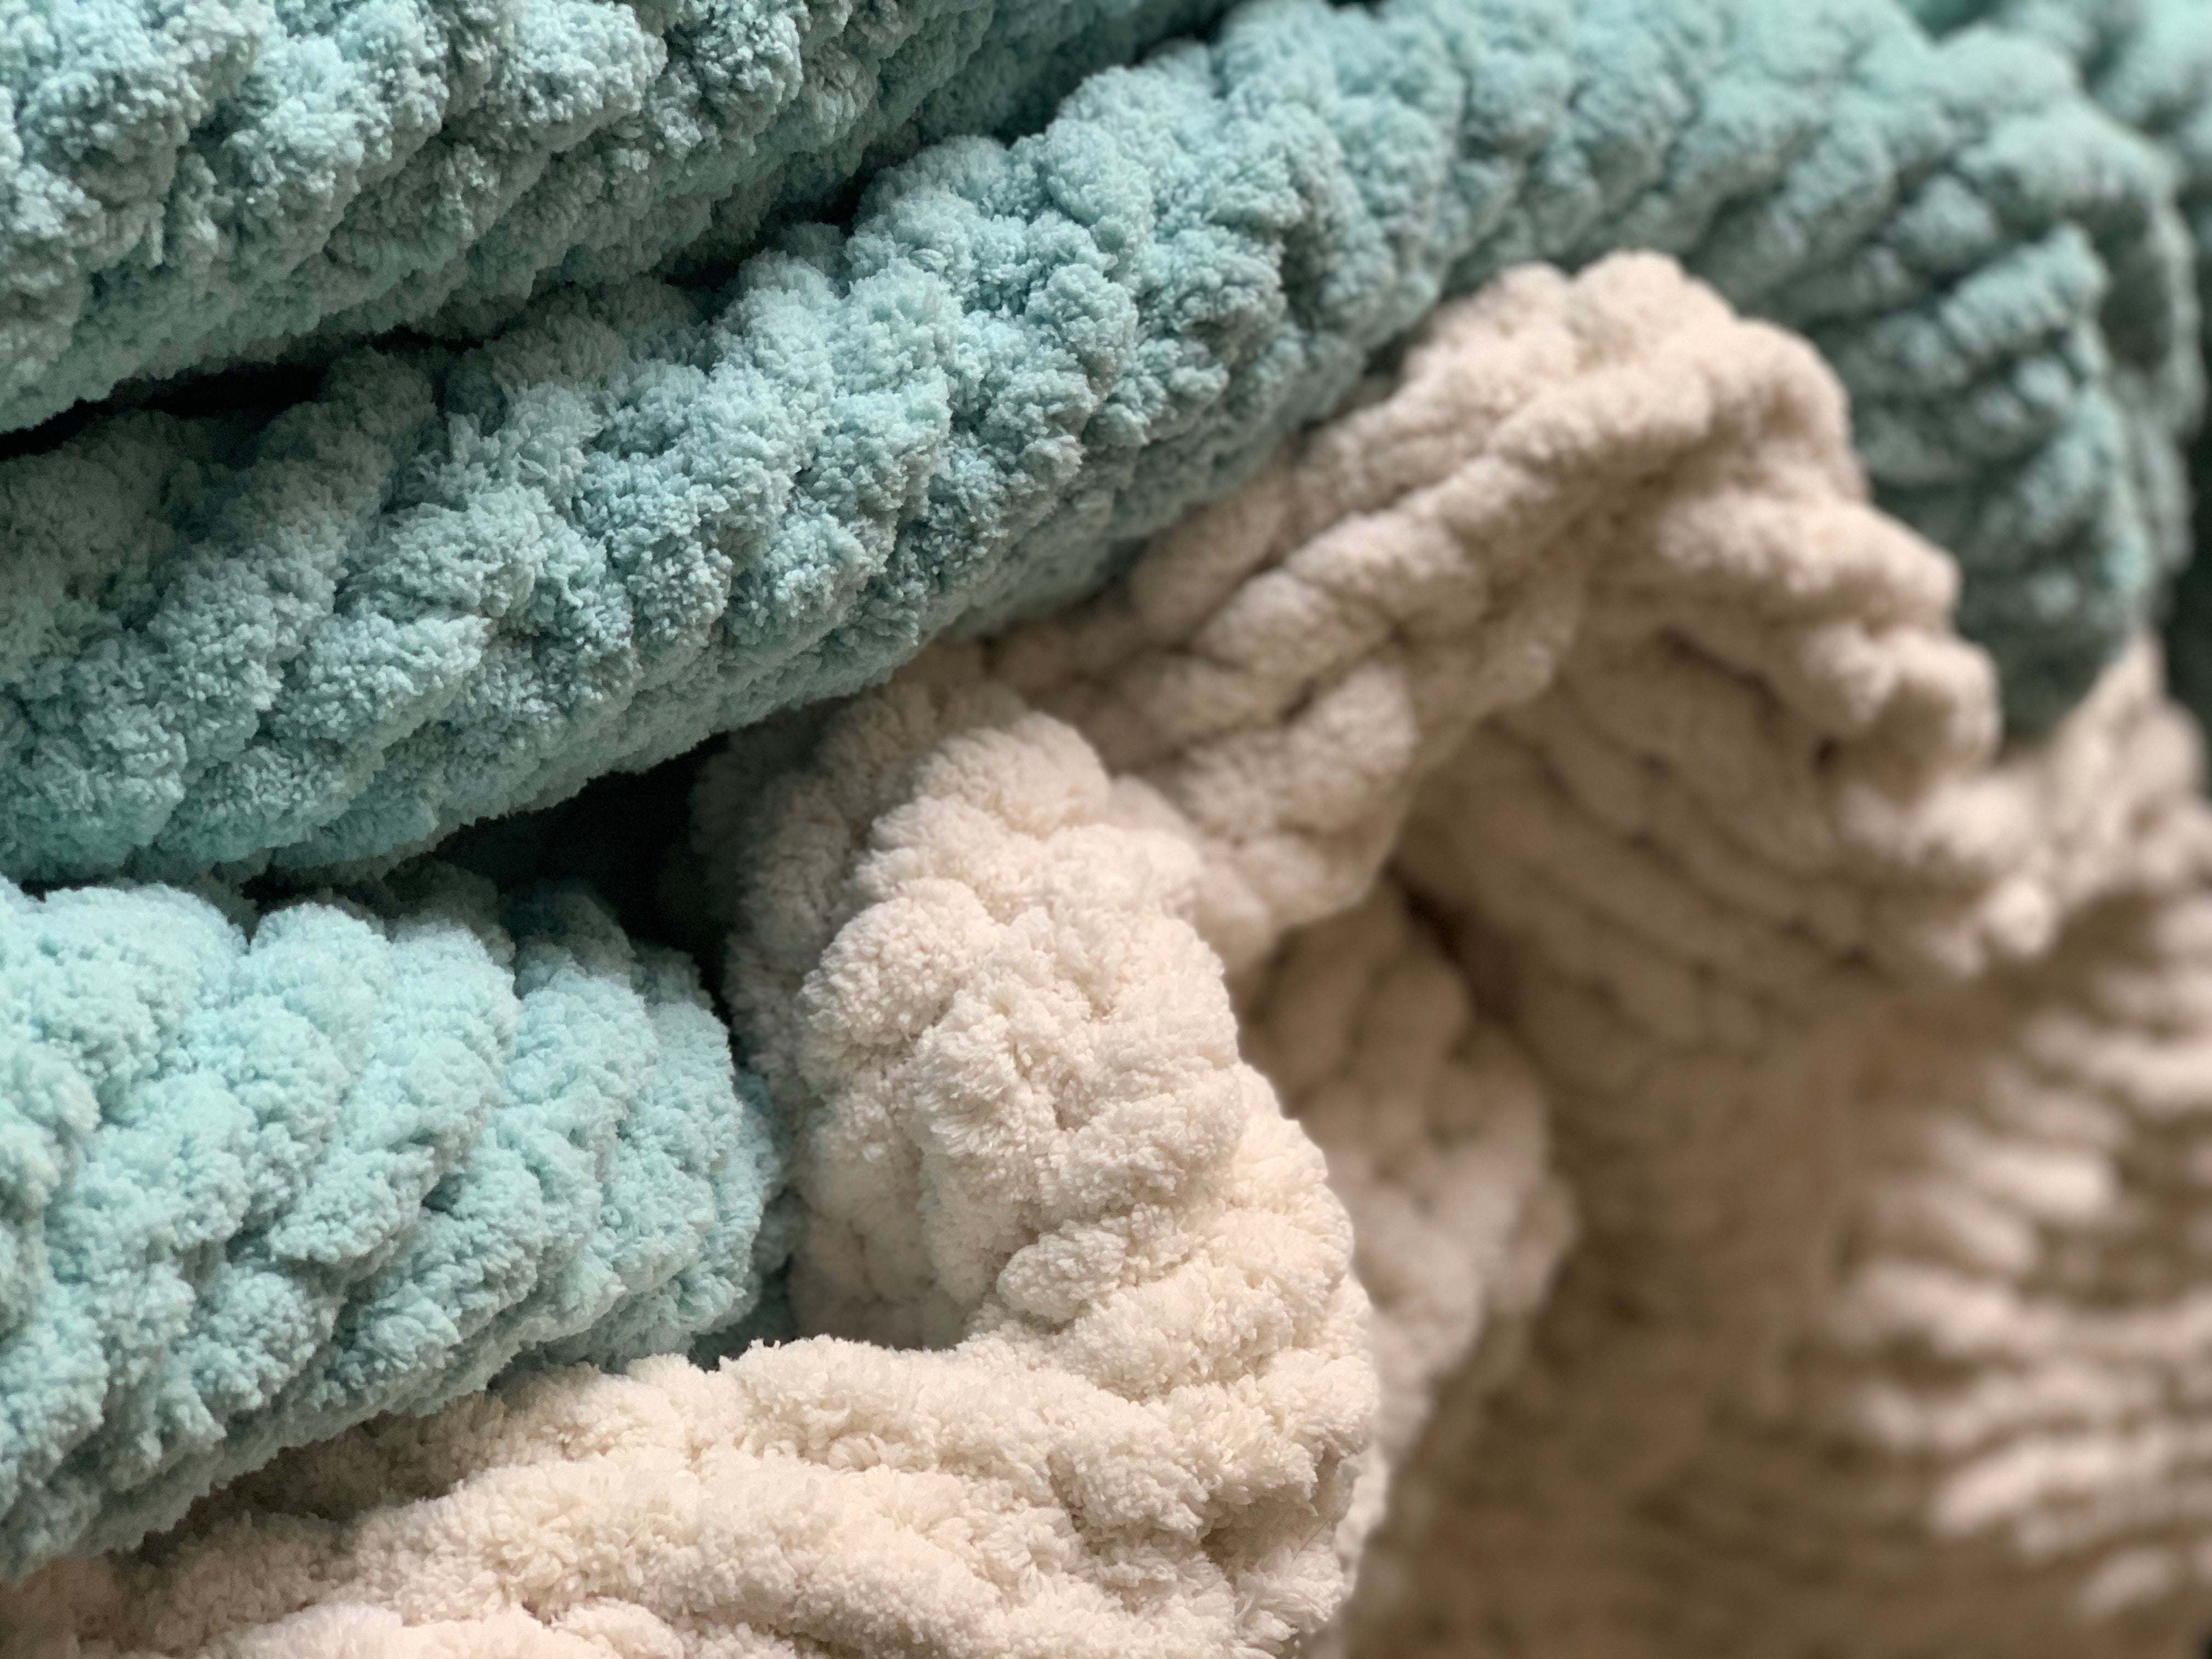 Woobie Velvet Chunky Knit Blanket